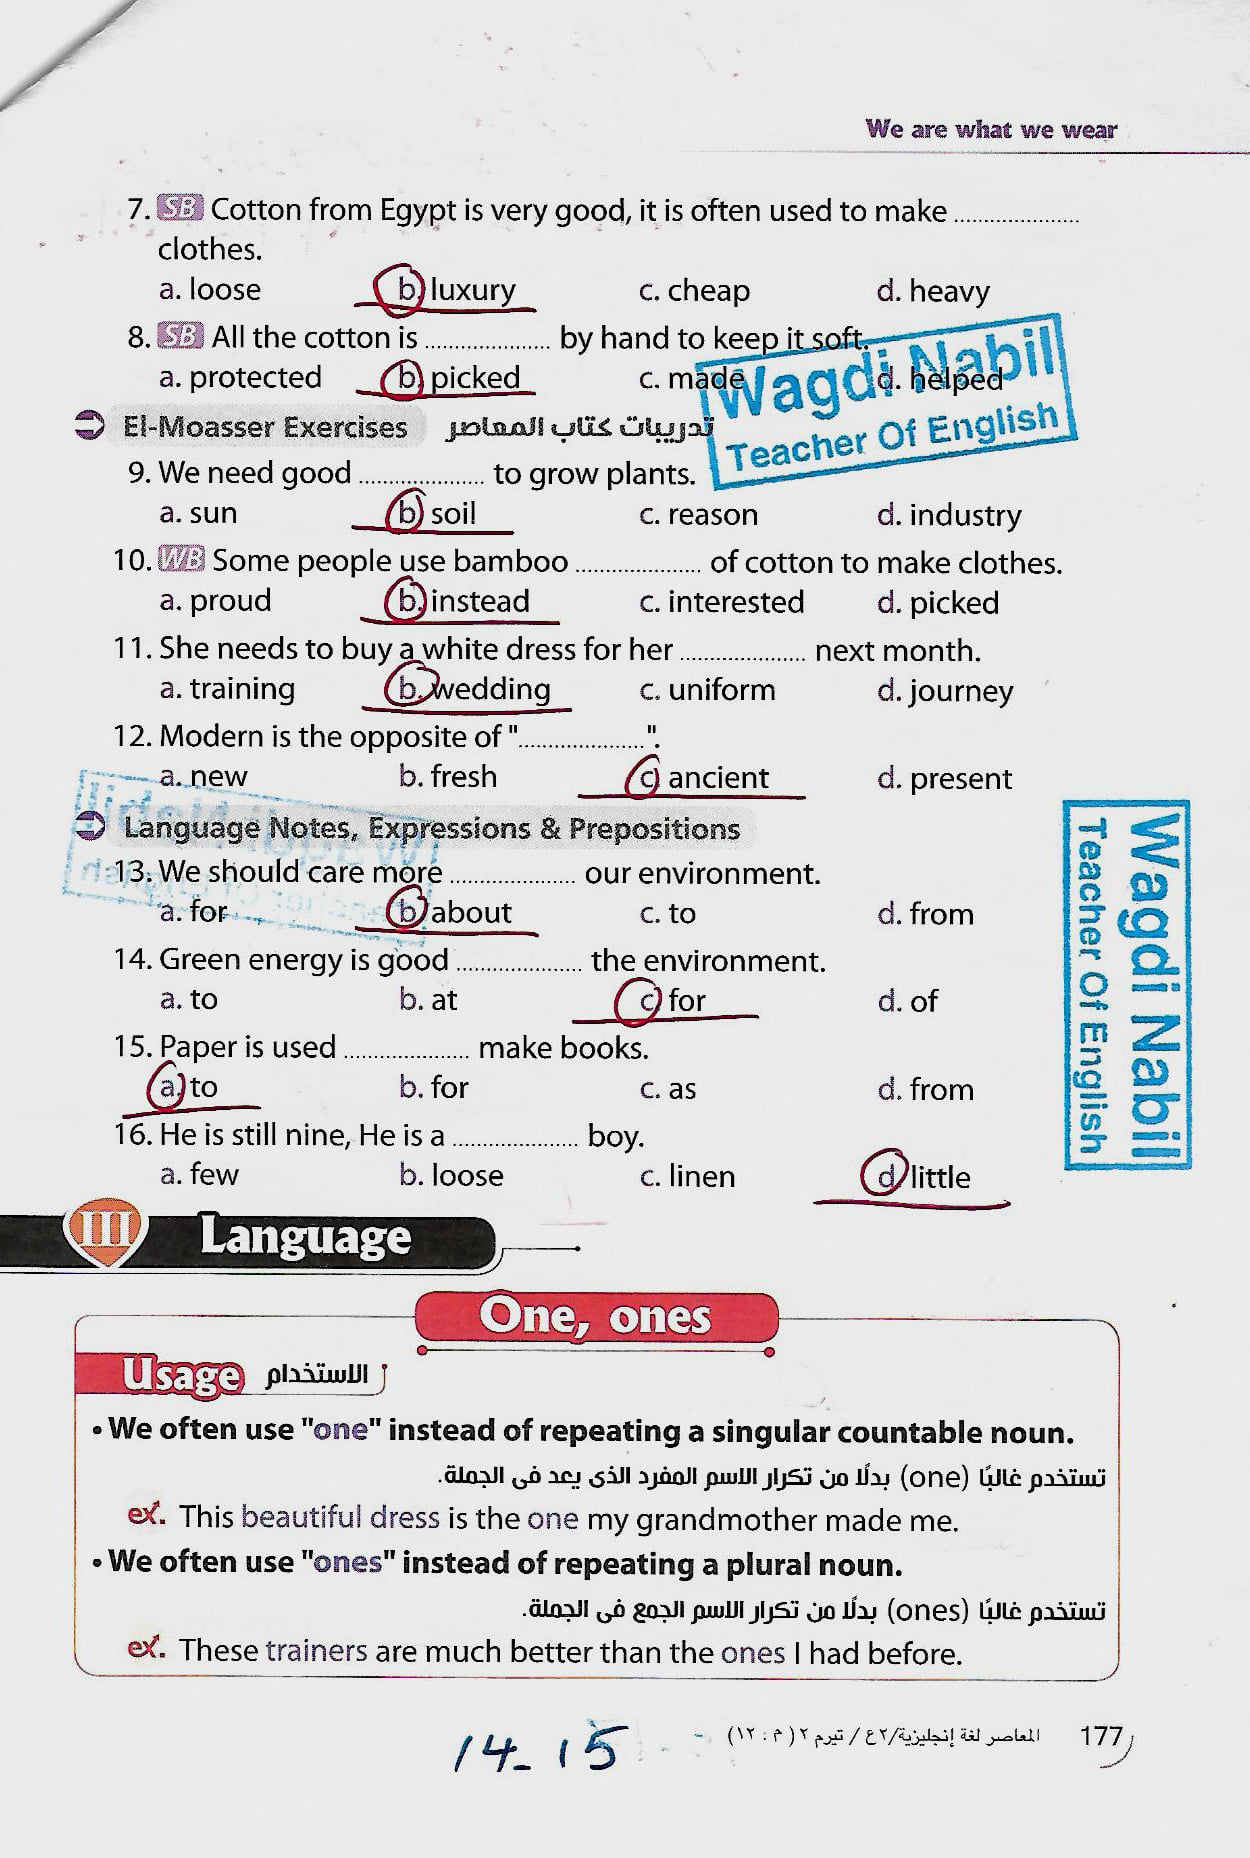 مراجعة اللغة الانجليزية للصف الثاني الاعدادي الترم الثاني mr _ Wagdi Nabil